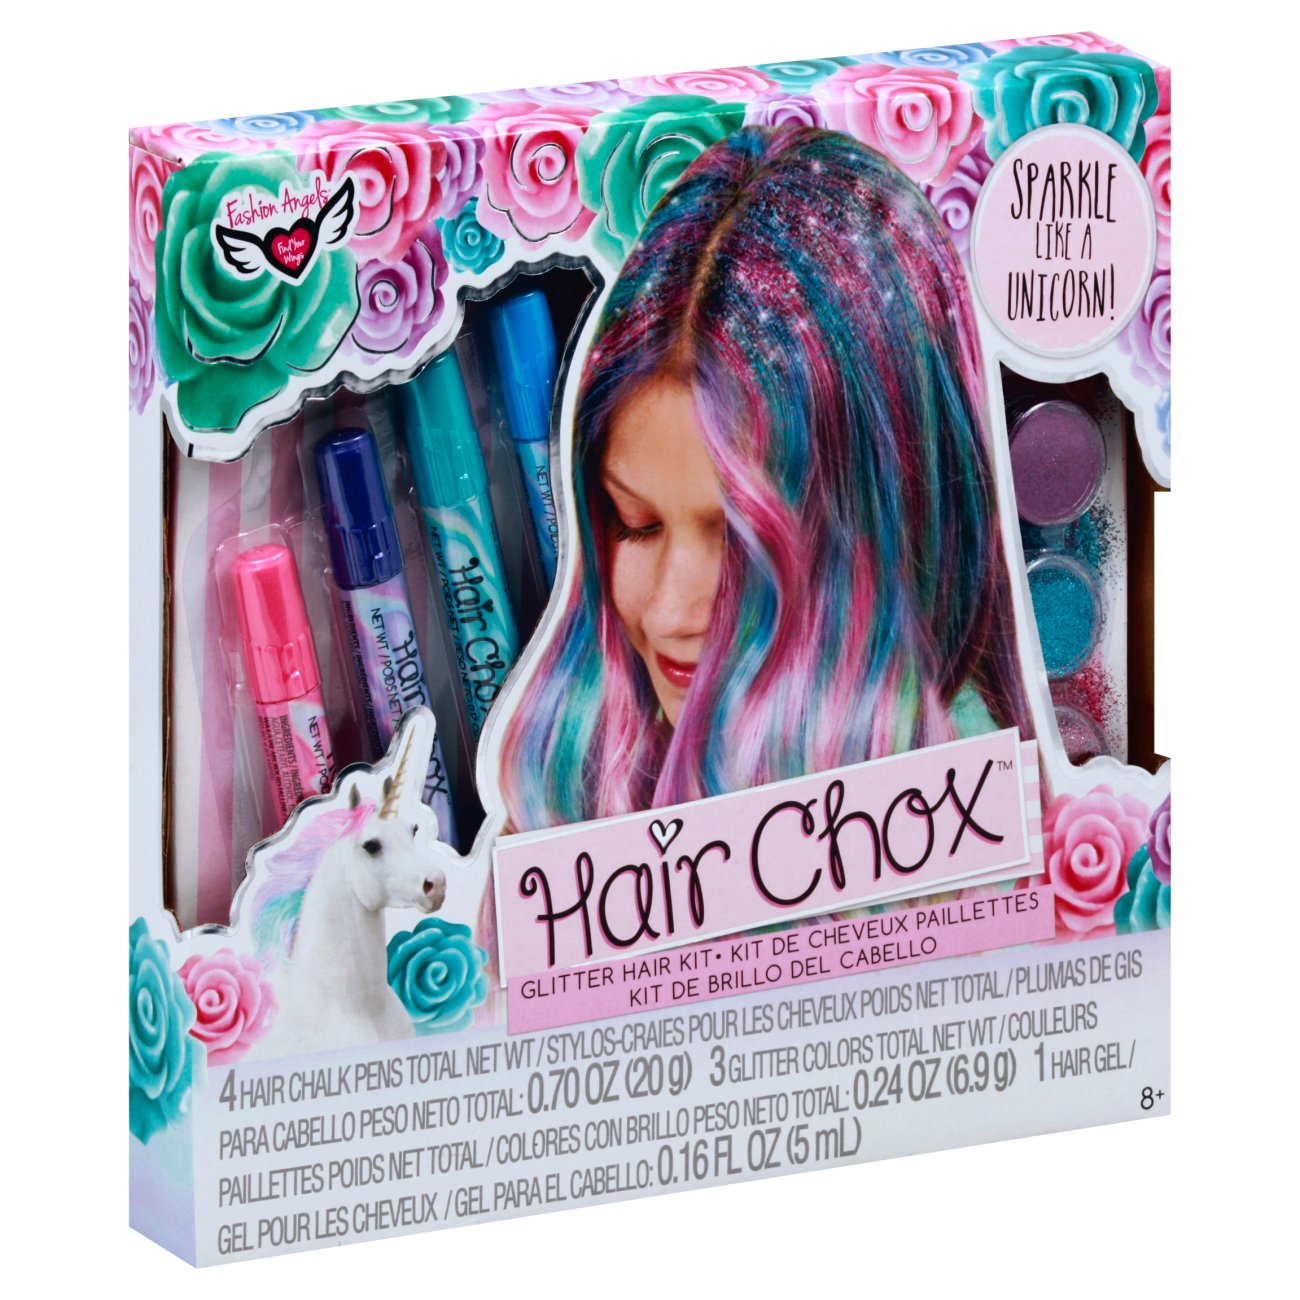 Fashion Angels Unicorn Magic Hair Chox Set - Shop Toys at H-E-B